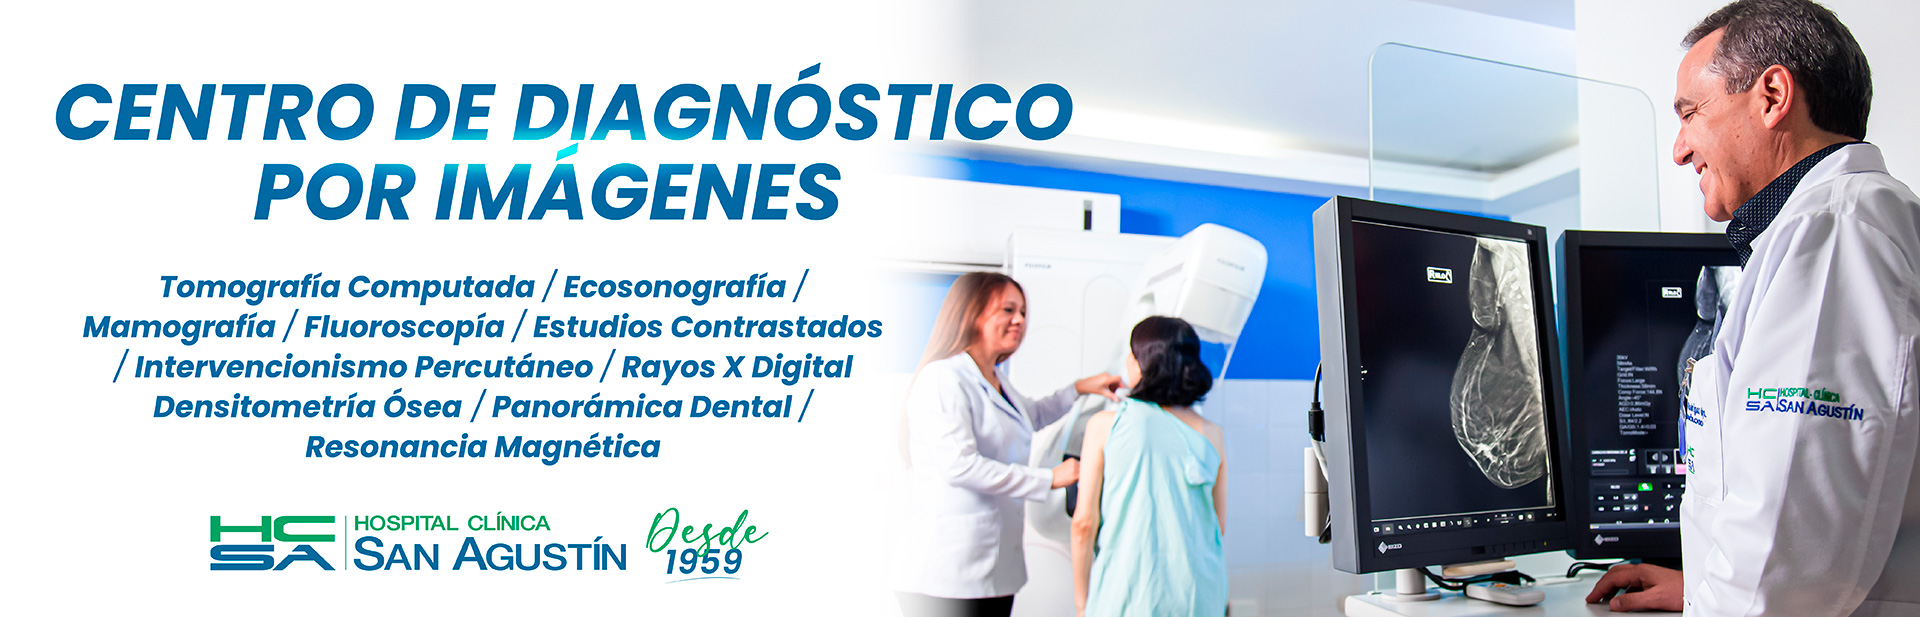 Centro de Diagnóstico por Imágenes | Hospital Clínica San Agustín